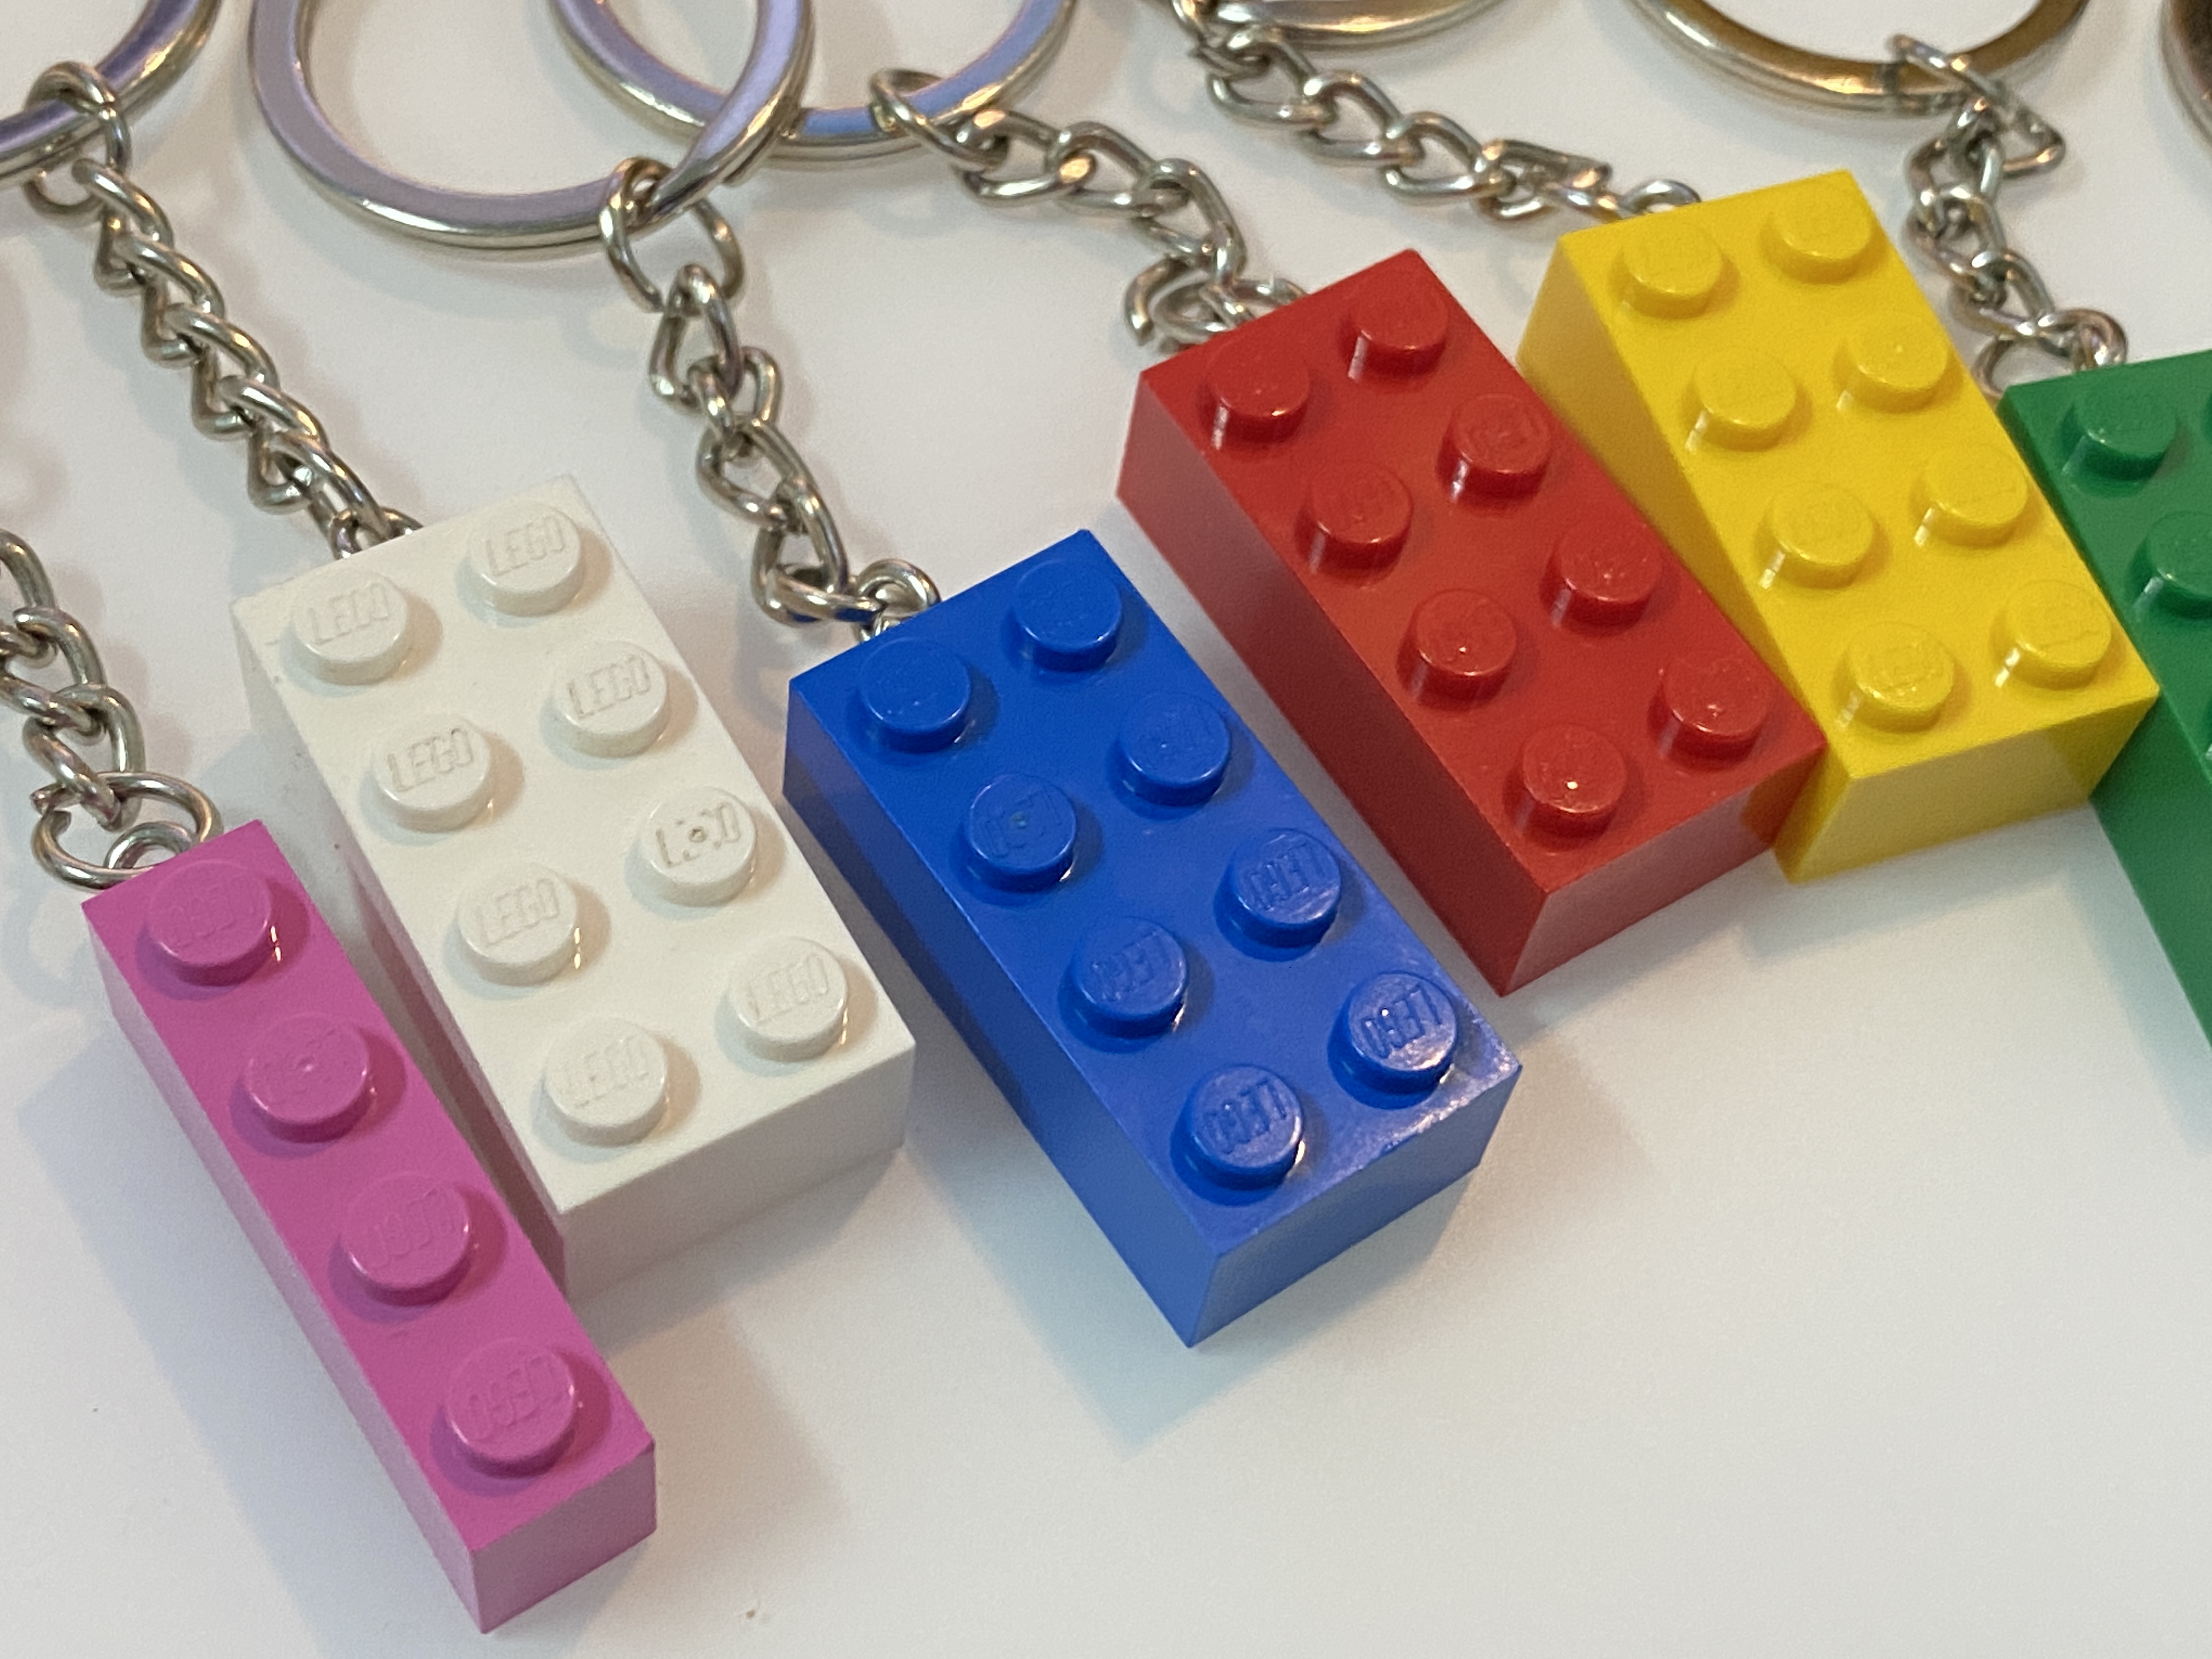 乐高 LEGO 砖块钥匙链 店铺自制 DIY 创意积木礼物